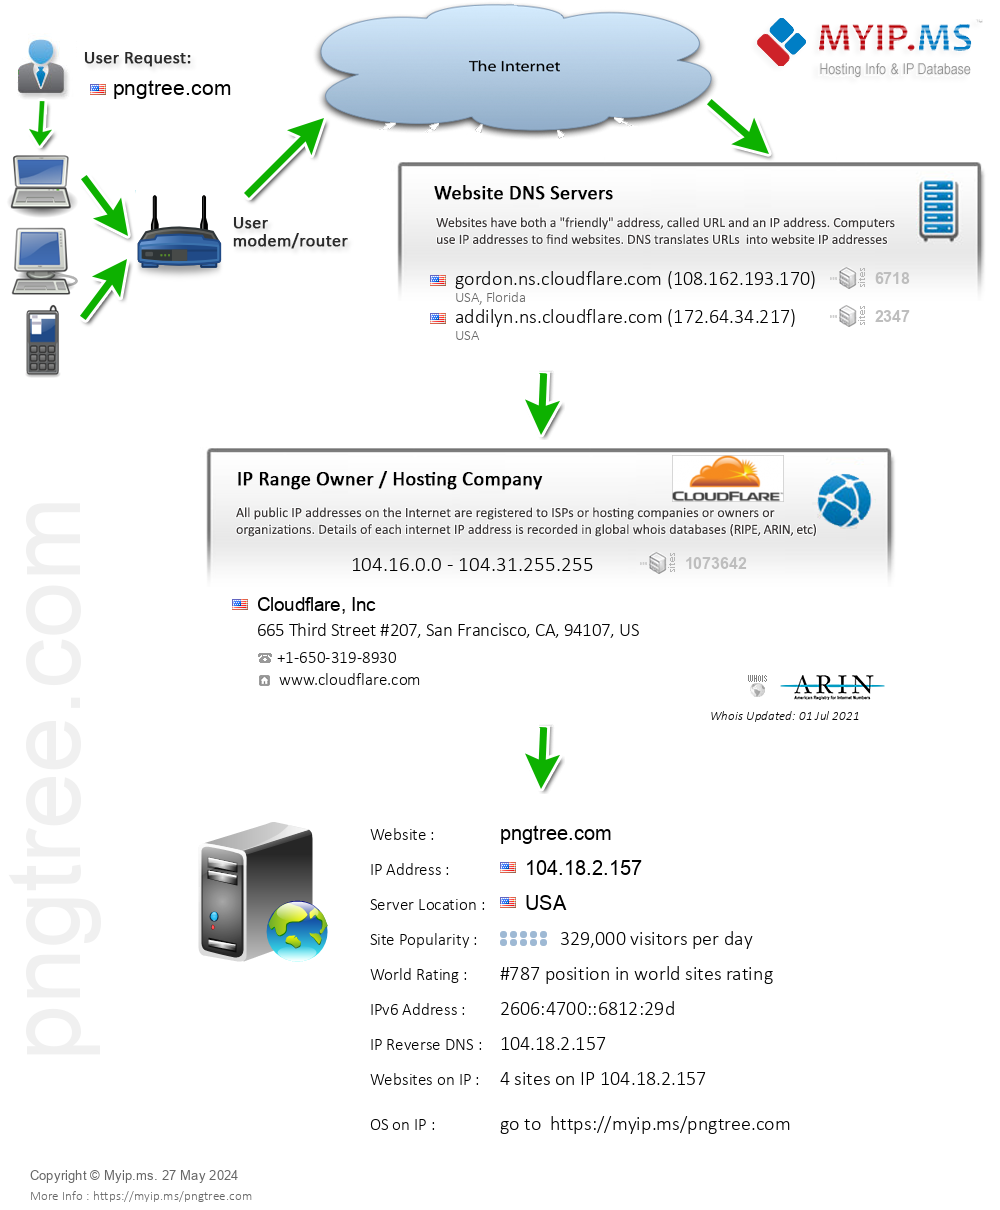 Pngtree.com - Website Hosting Visual IP Diagram